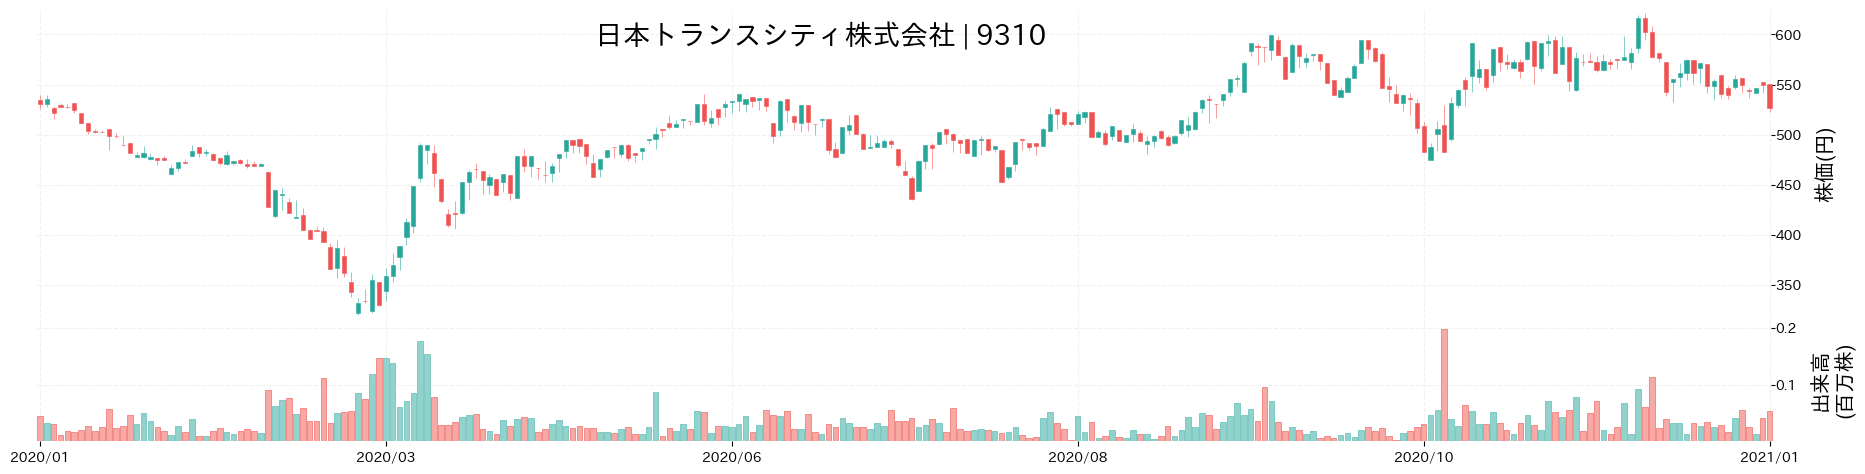 日本トランスシティの株価推移(2020)